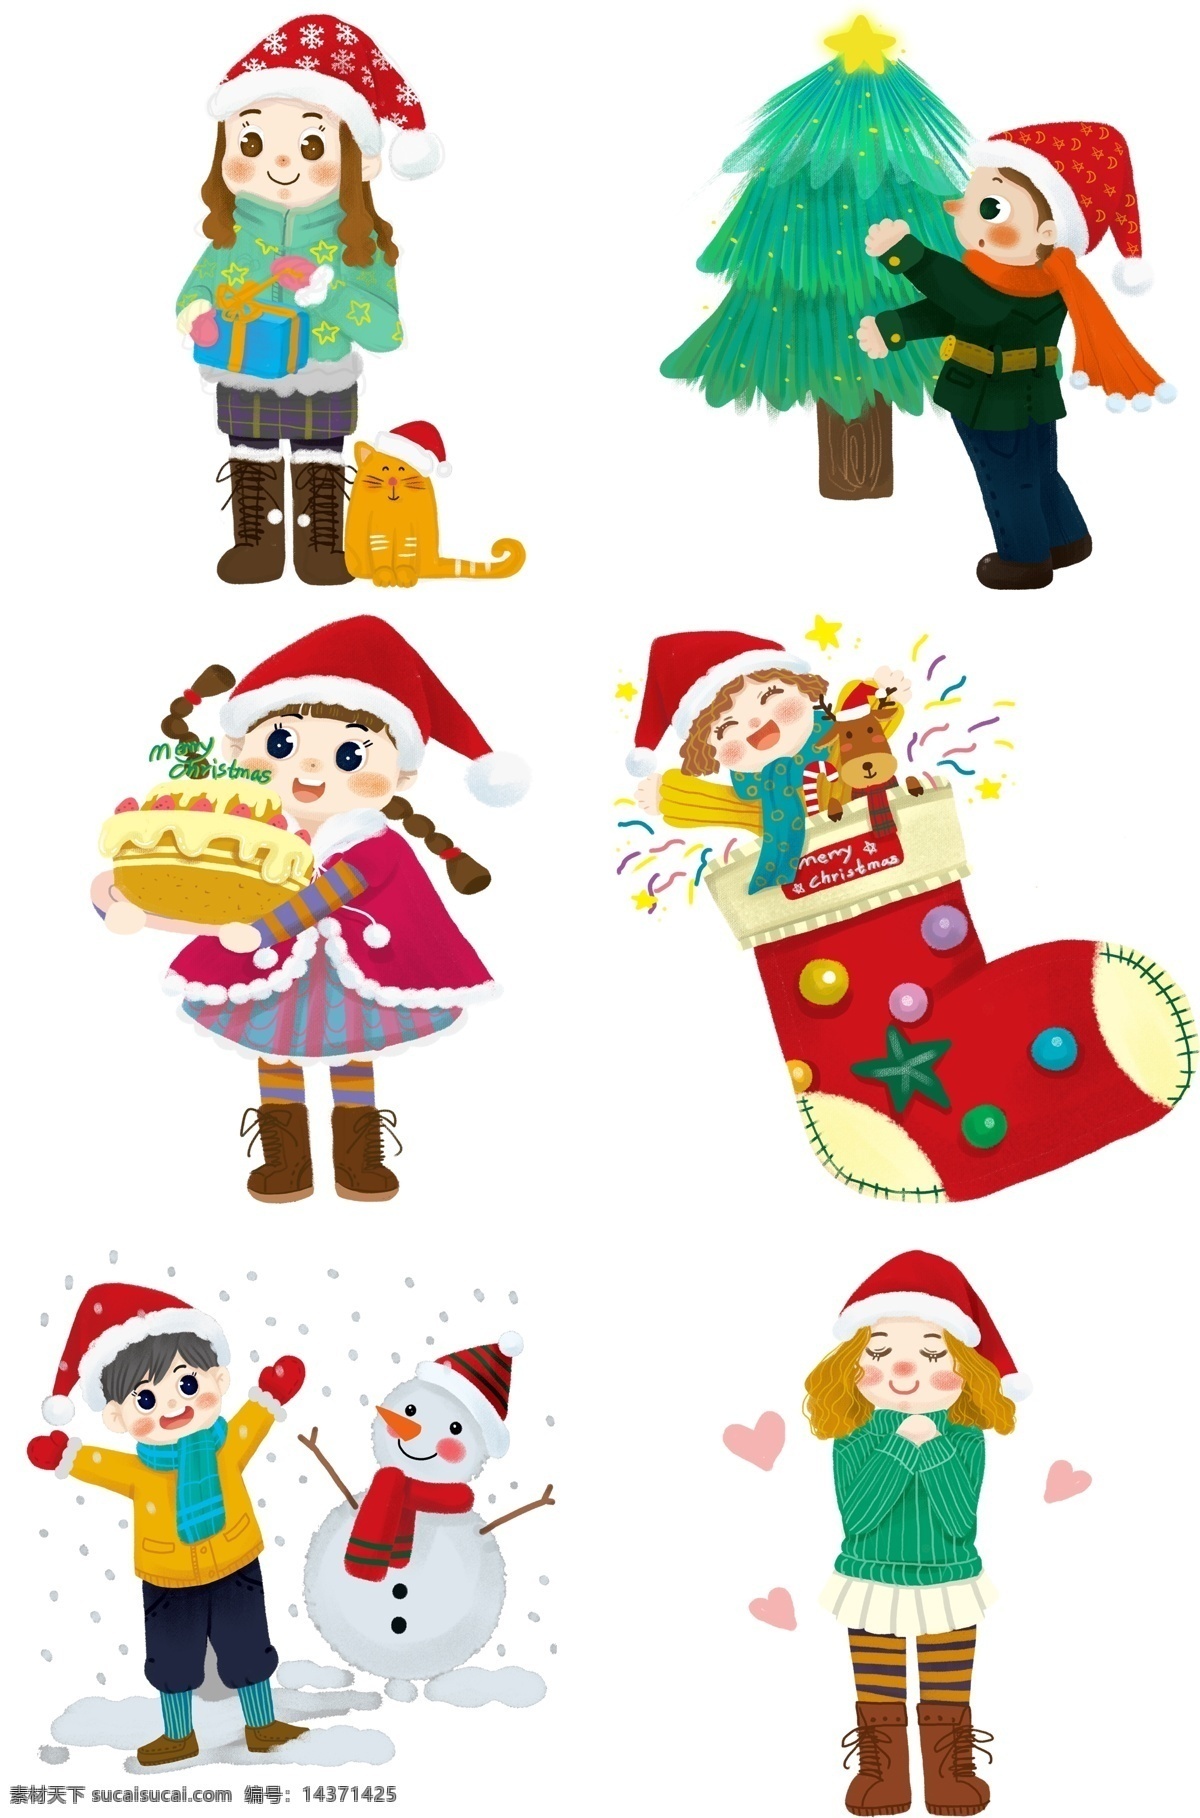 圣诞节 孩子 故事 现场 圣诞 节日 男孩女孩系列 礼物 传统习俗 可爱 卡通风 童话风格 边框 插画 壁纸 装饰画